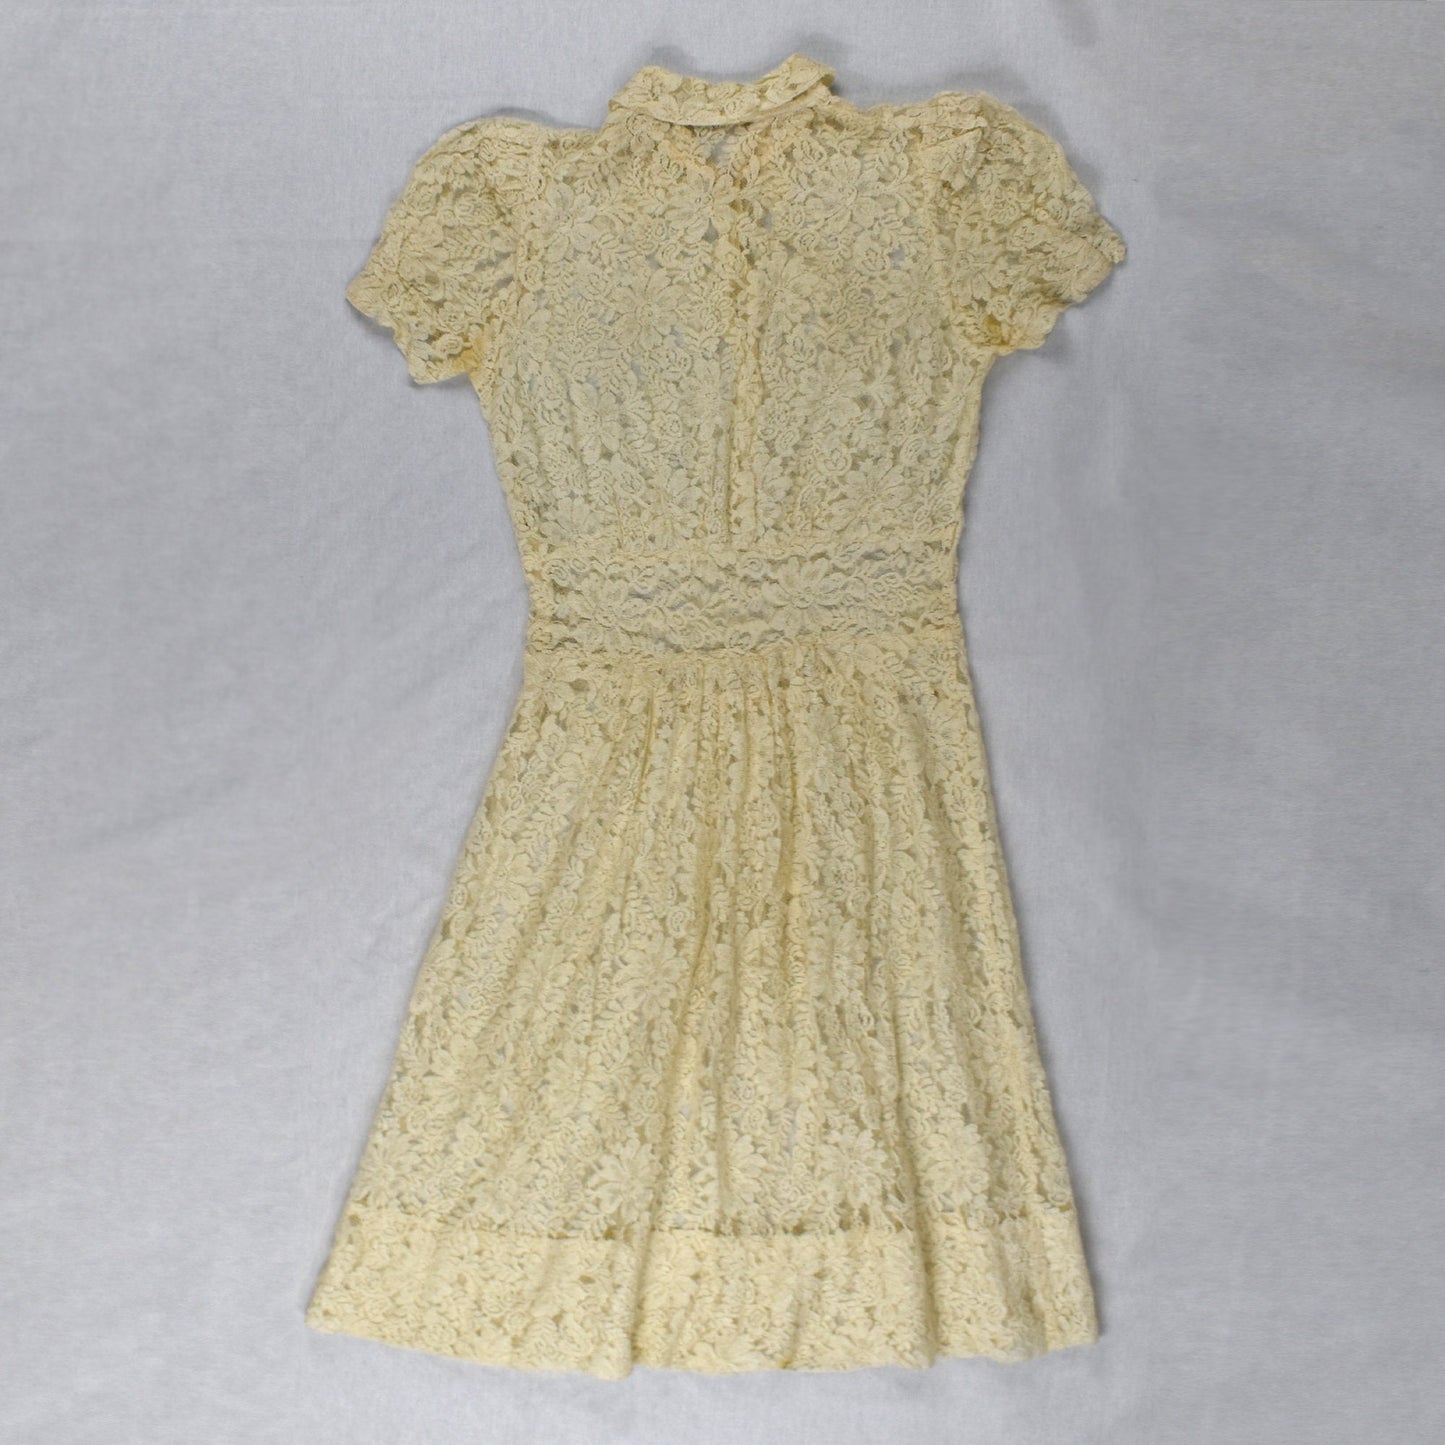 Vintage 1930's/40's Butter Lace Dress